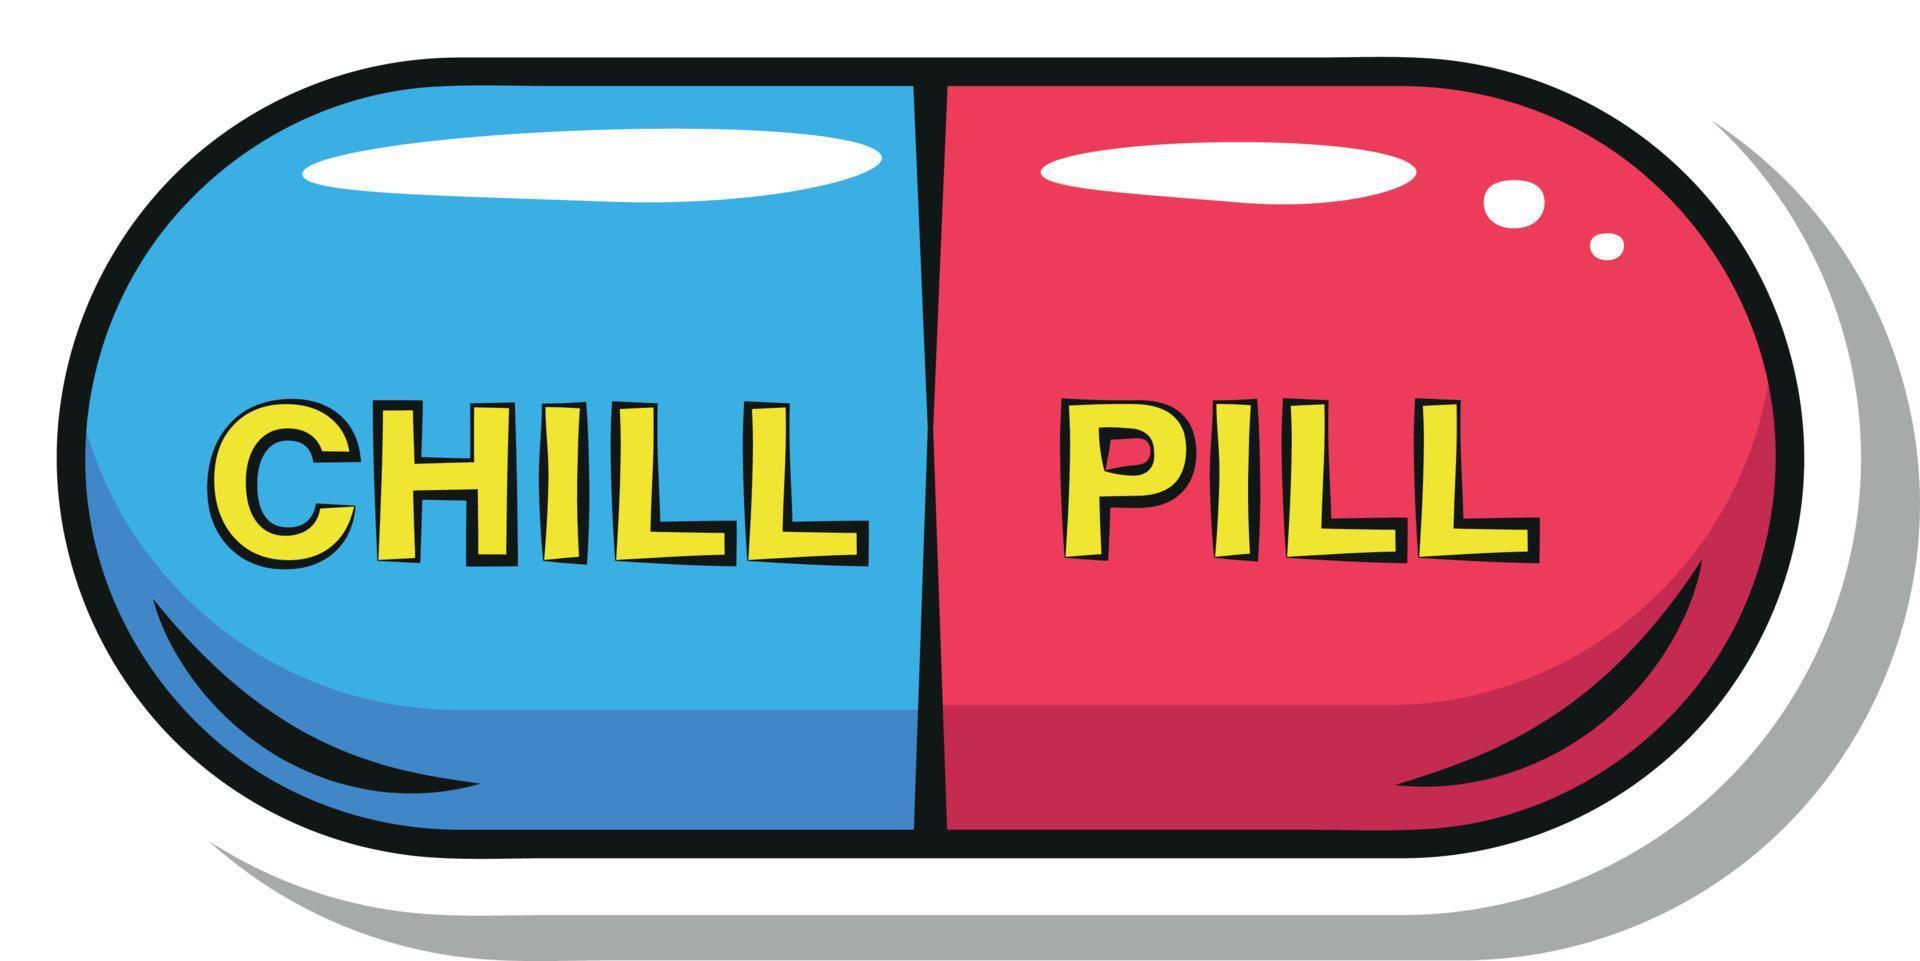 Chill-Pille im Pop-Art-Stil vektor